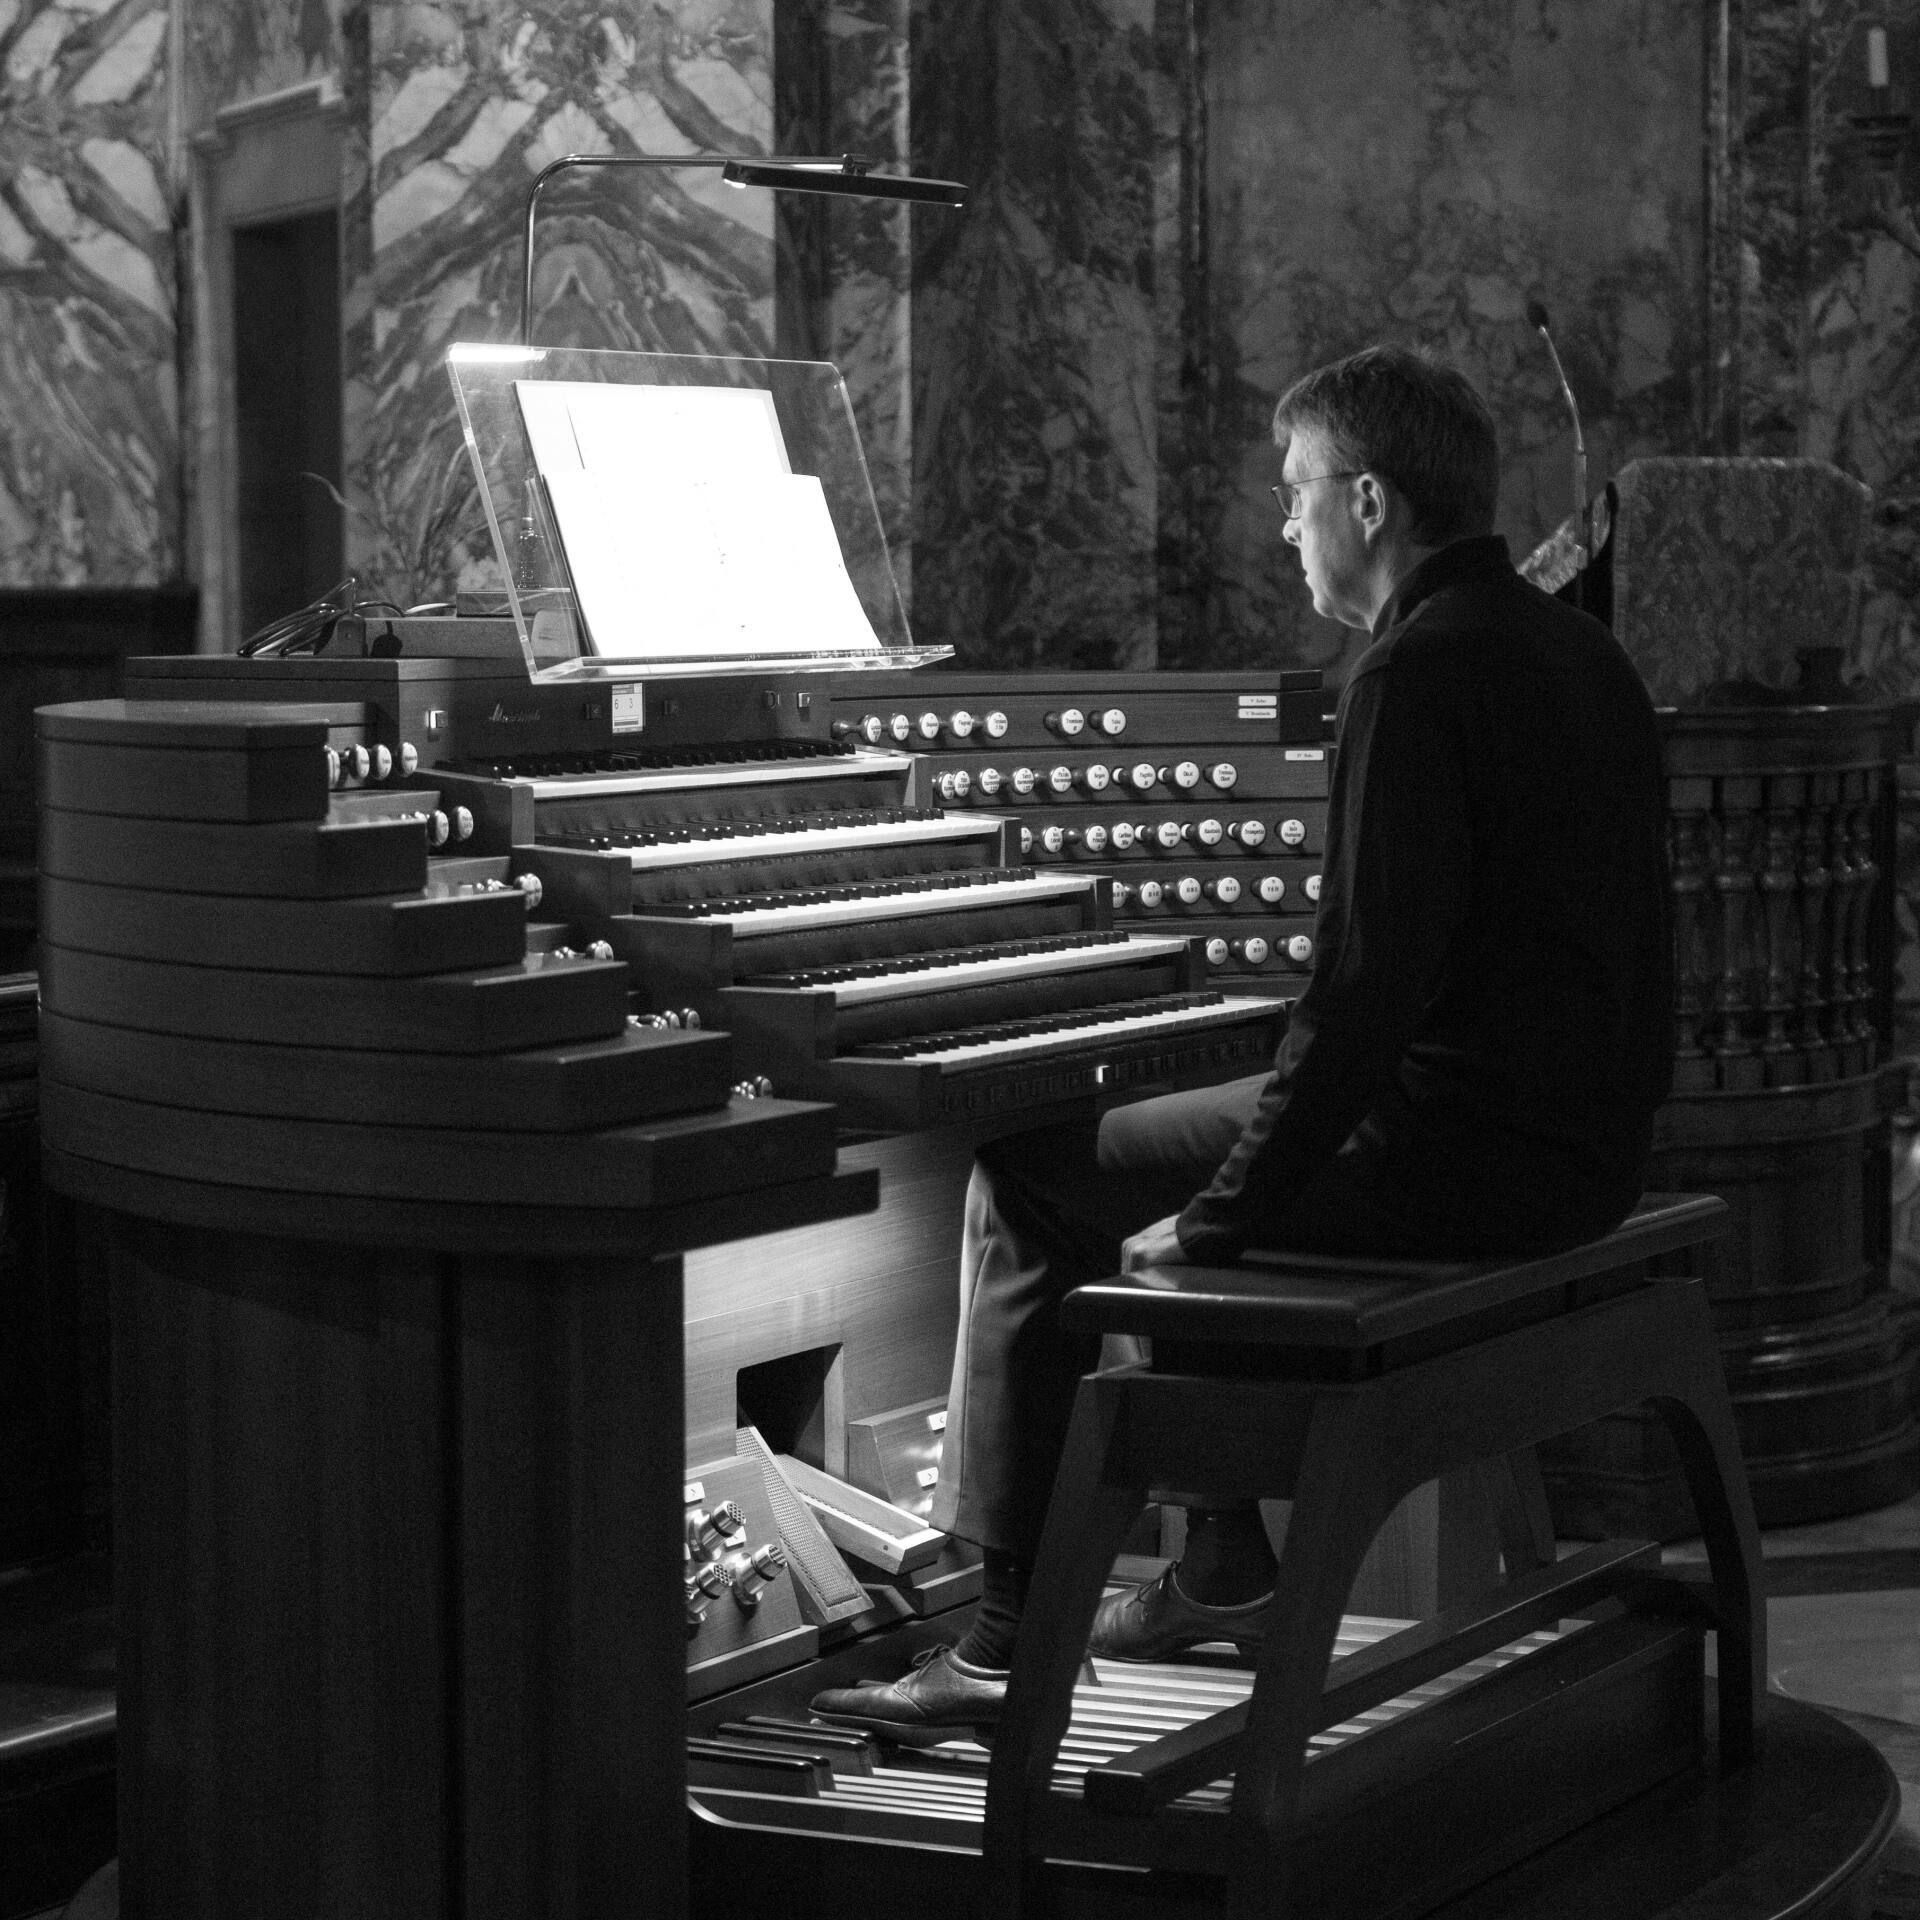 Bild in schwarz-weiß, Jürgen Sonnentheil sitzt an der Orgel